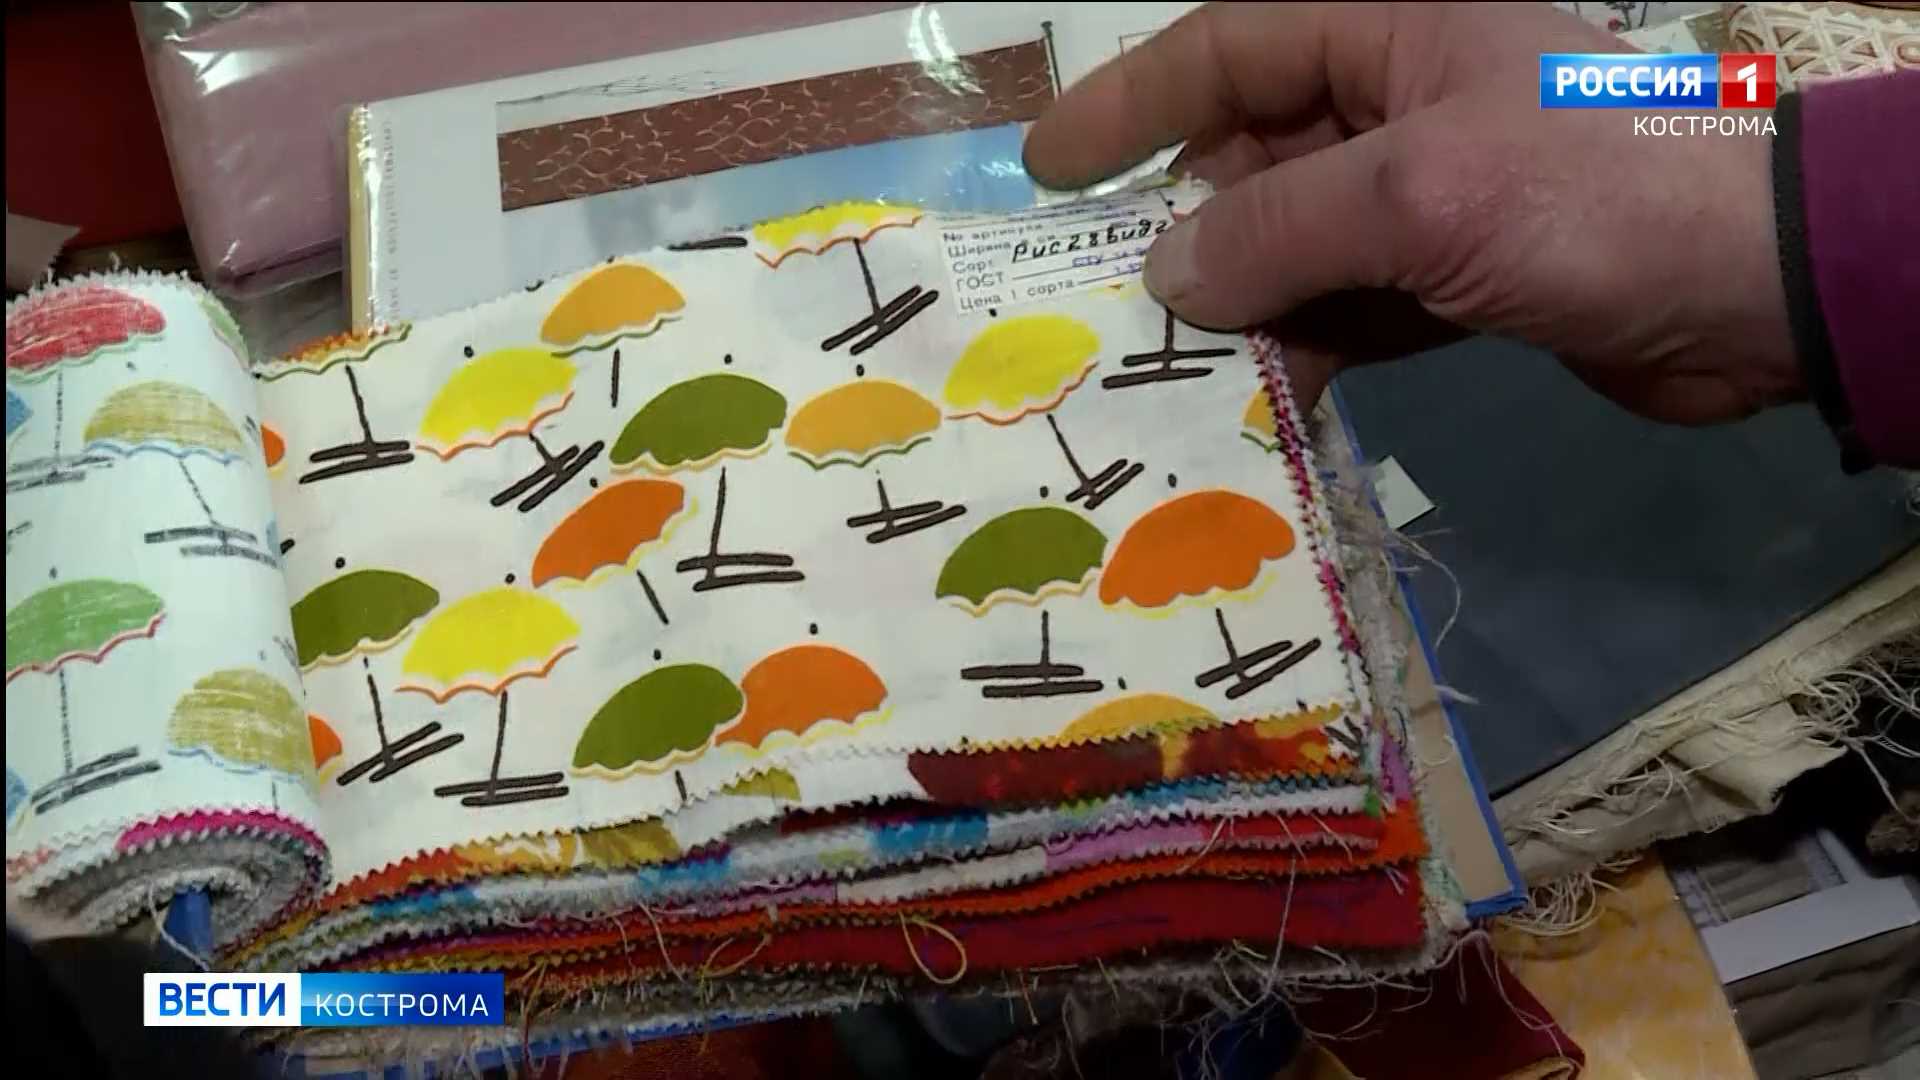 Текстильные узоры из Костромы волнуют модных дизайнеров